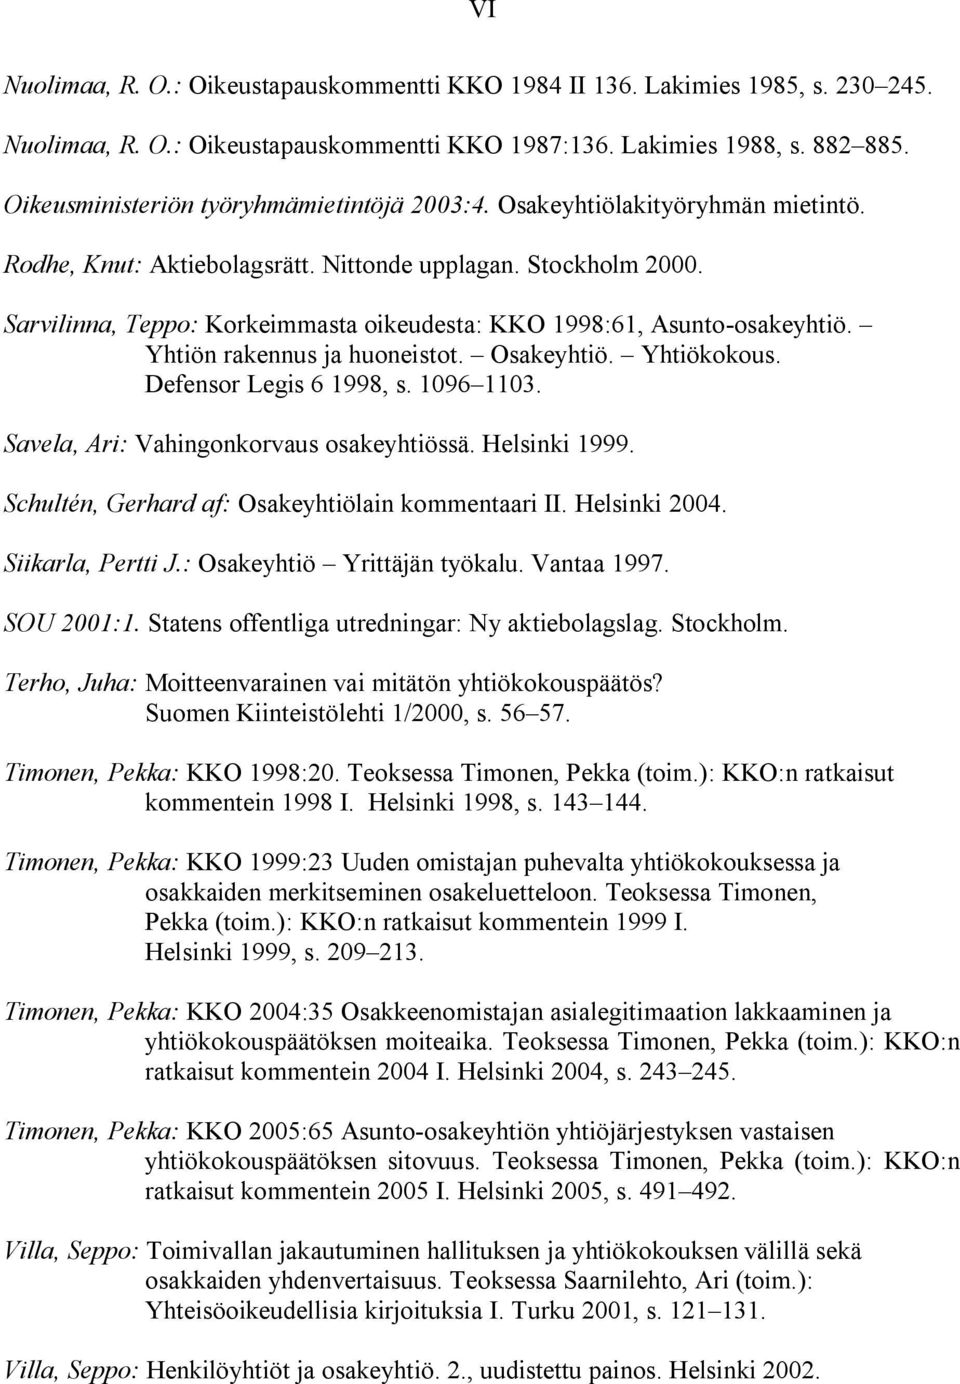 Sarvilinna, Teppo: Korkeimmasta oikeudesta: KKO 1998:61, Asunto-osakeyhtiö. Yhtiön rakennus ja huoneistot. Osakeyhtiö. Yhtiökokous. Defensor Legis 6 1998, s. 1096 1103.